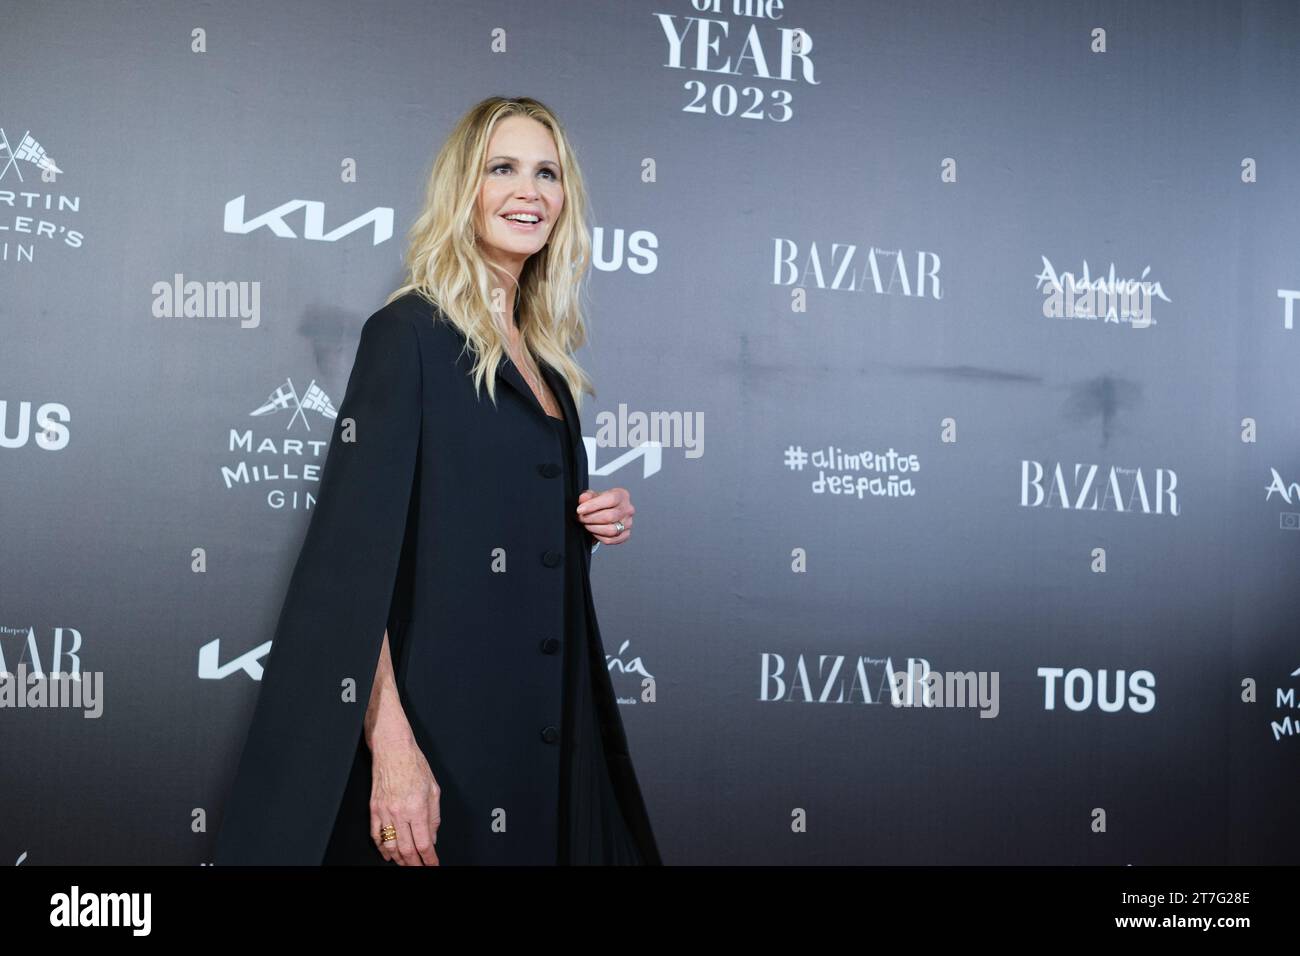 Elle Macpherson assiste aux Harper's Bazaar Women of the Year Awards 2023 à Cines Callao le 15 novembre 2023 à Madrid, Espagne. Banque D'Images